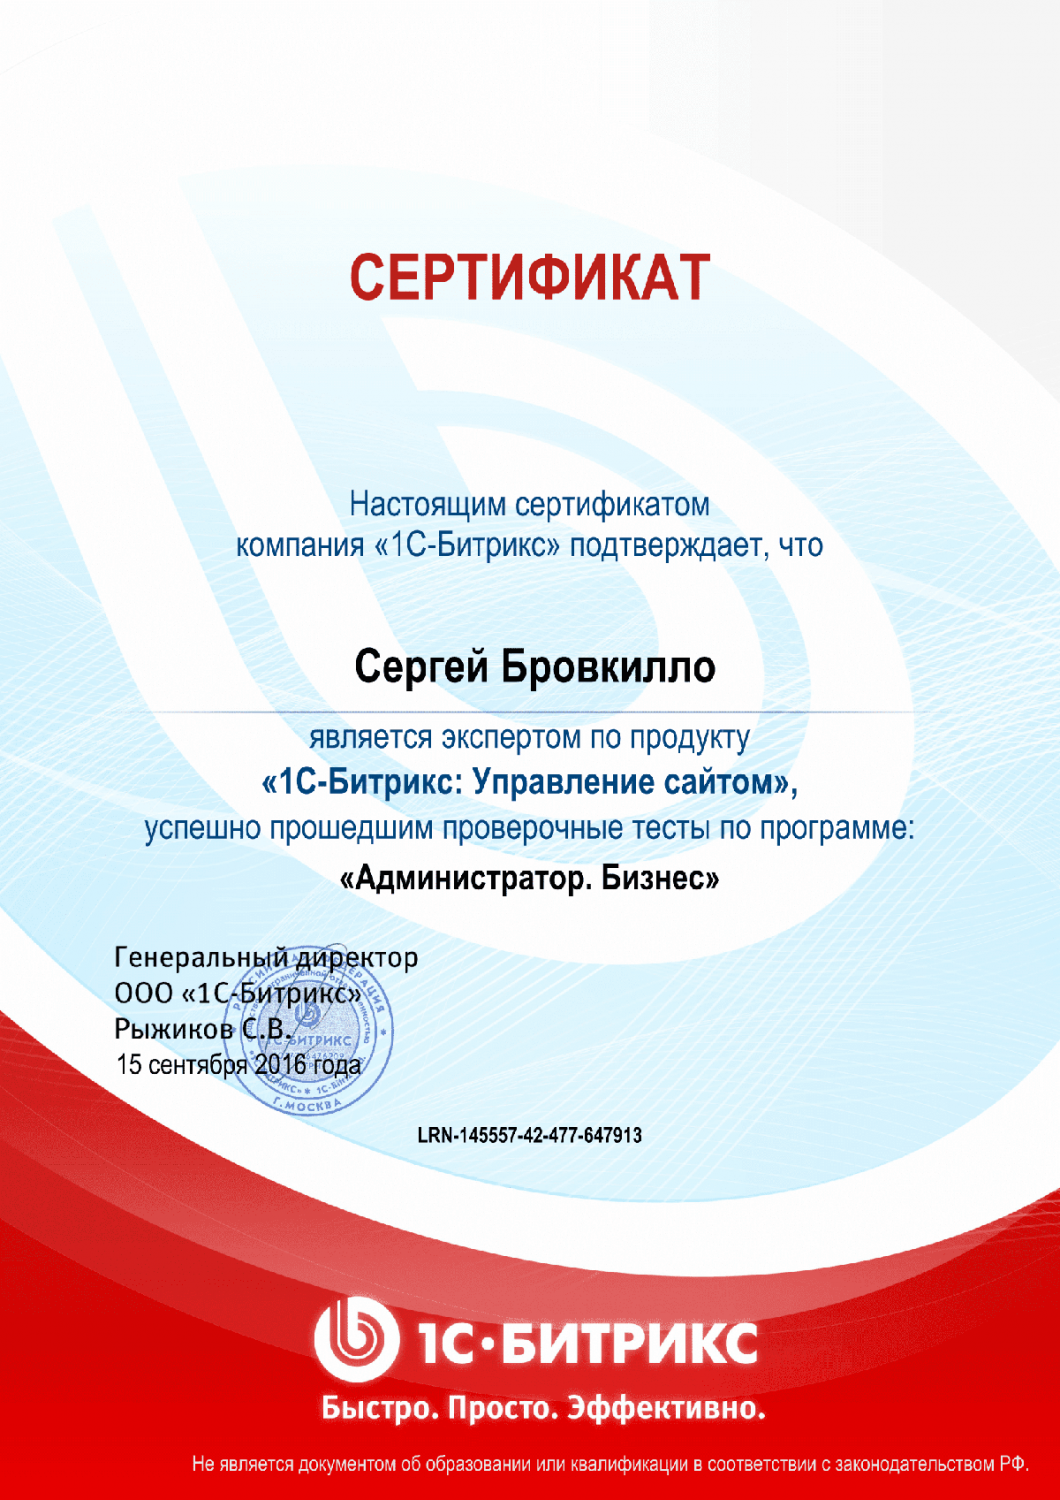 Сертификат эксперта по программе "Администратор. Бизнес" в Петропавловска-Камчатского